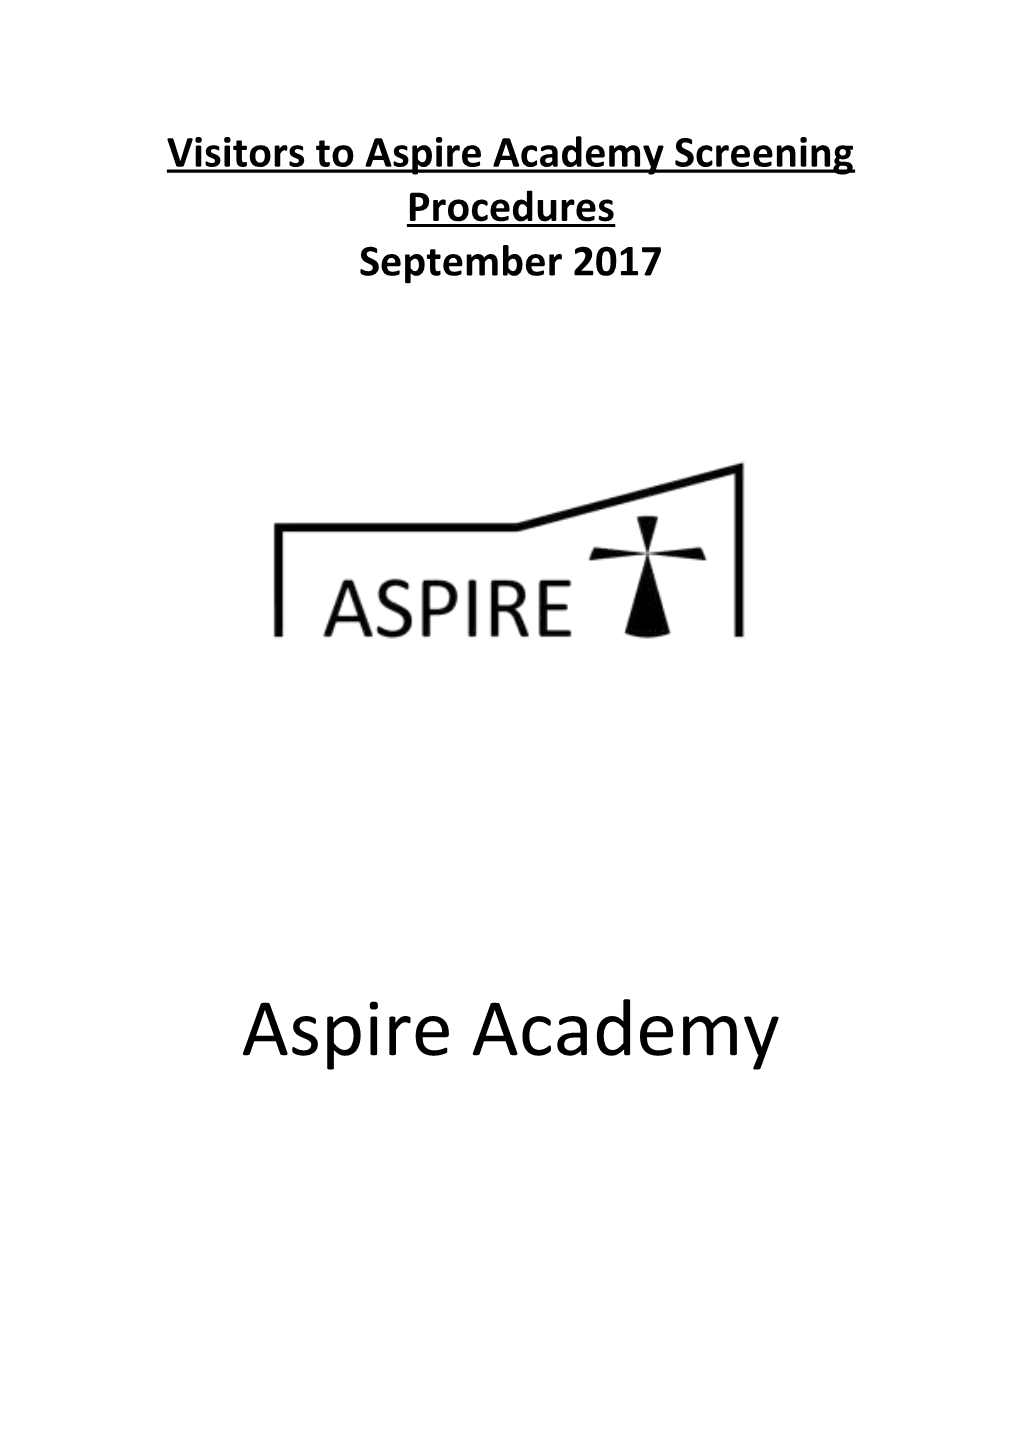 Visitors to Aspire Academy Screening Procedures